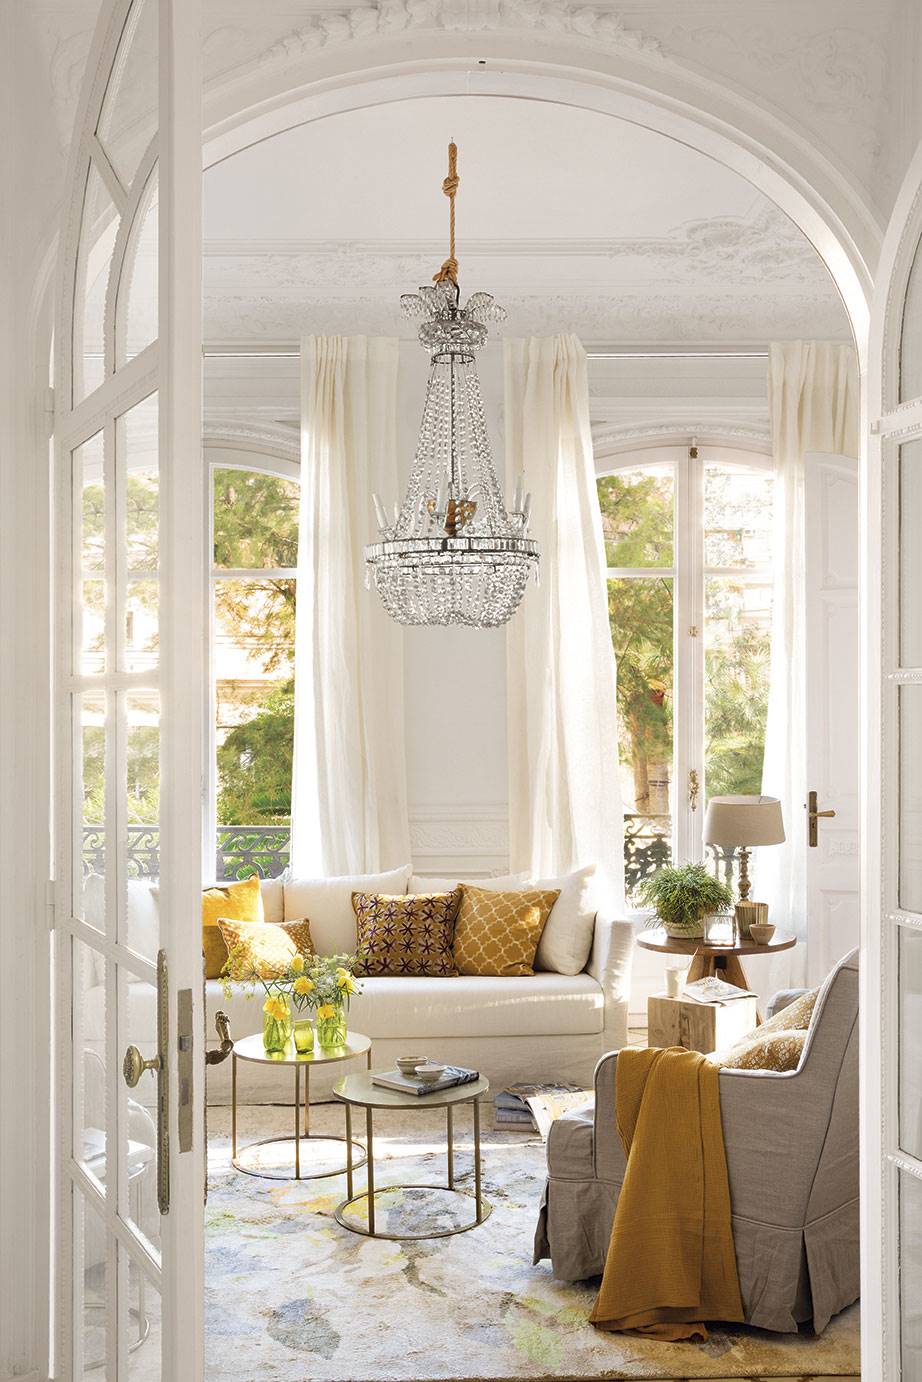 Salón de estilo clásico con sofá blanco, lámpara de araña y detelles en dorado. 